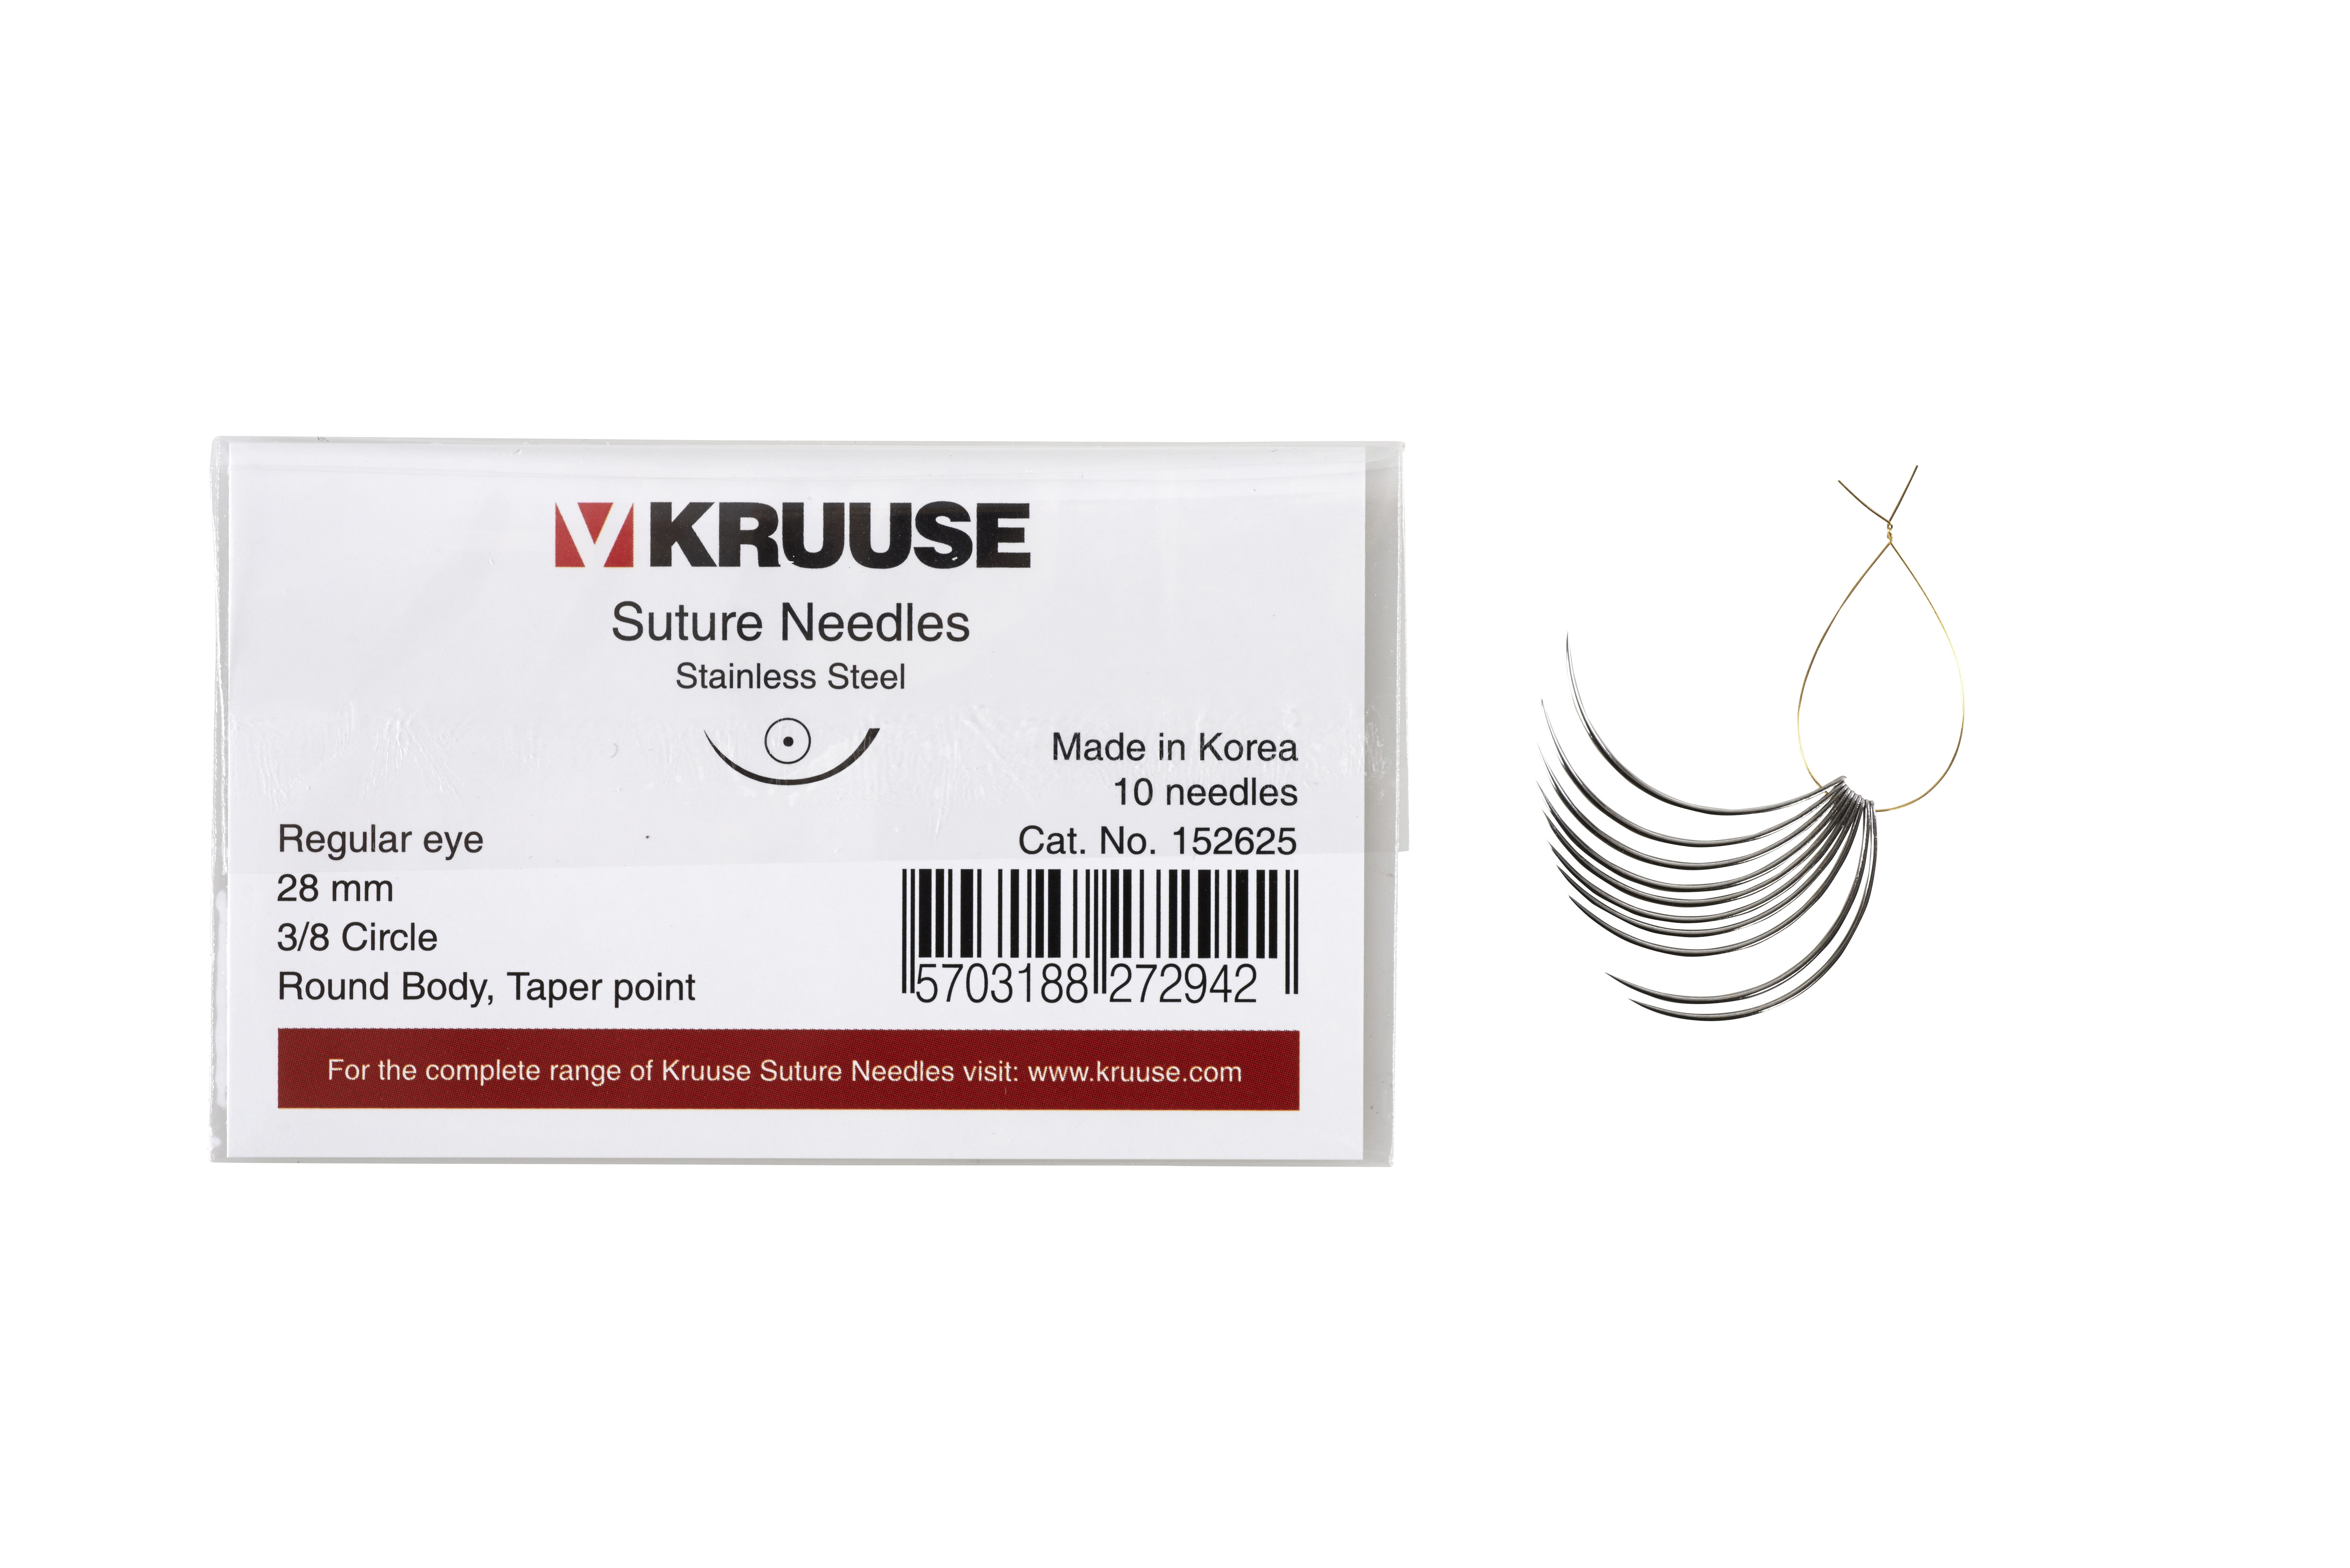 KRUUSE Suture Needle, regular eye, 3/8 circle, round body, taper point, 28 mm, 10/pk